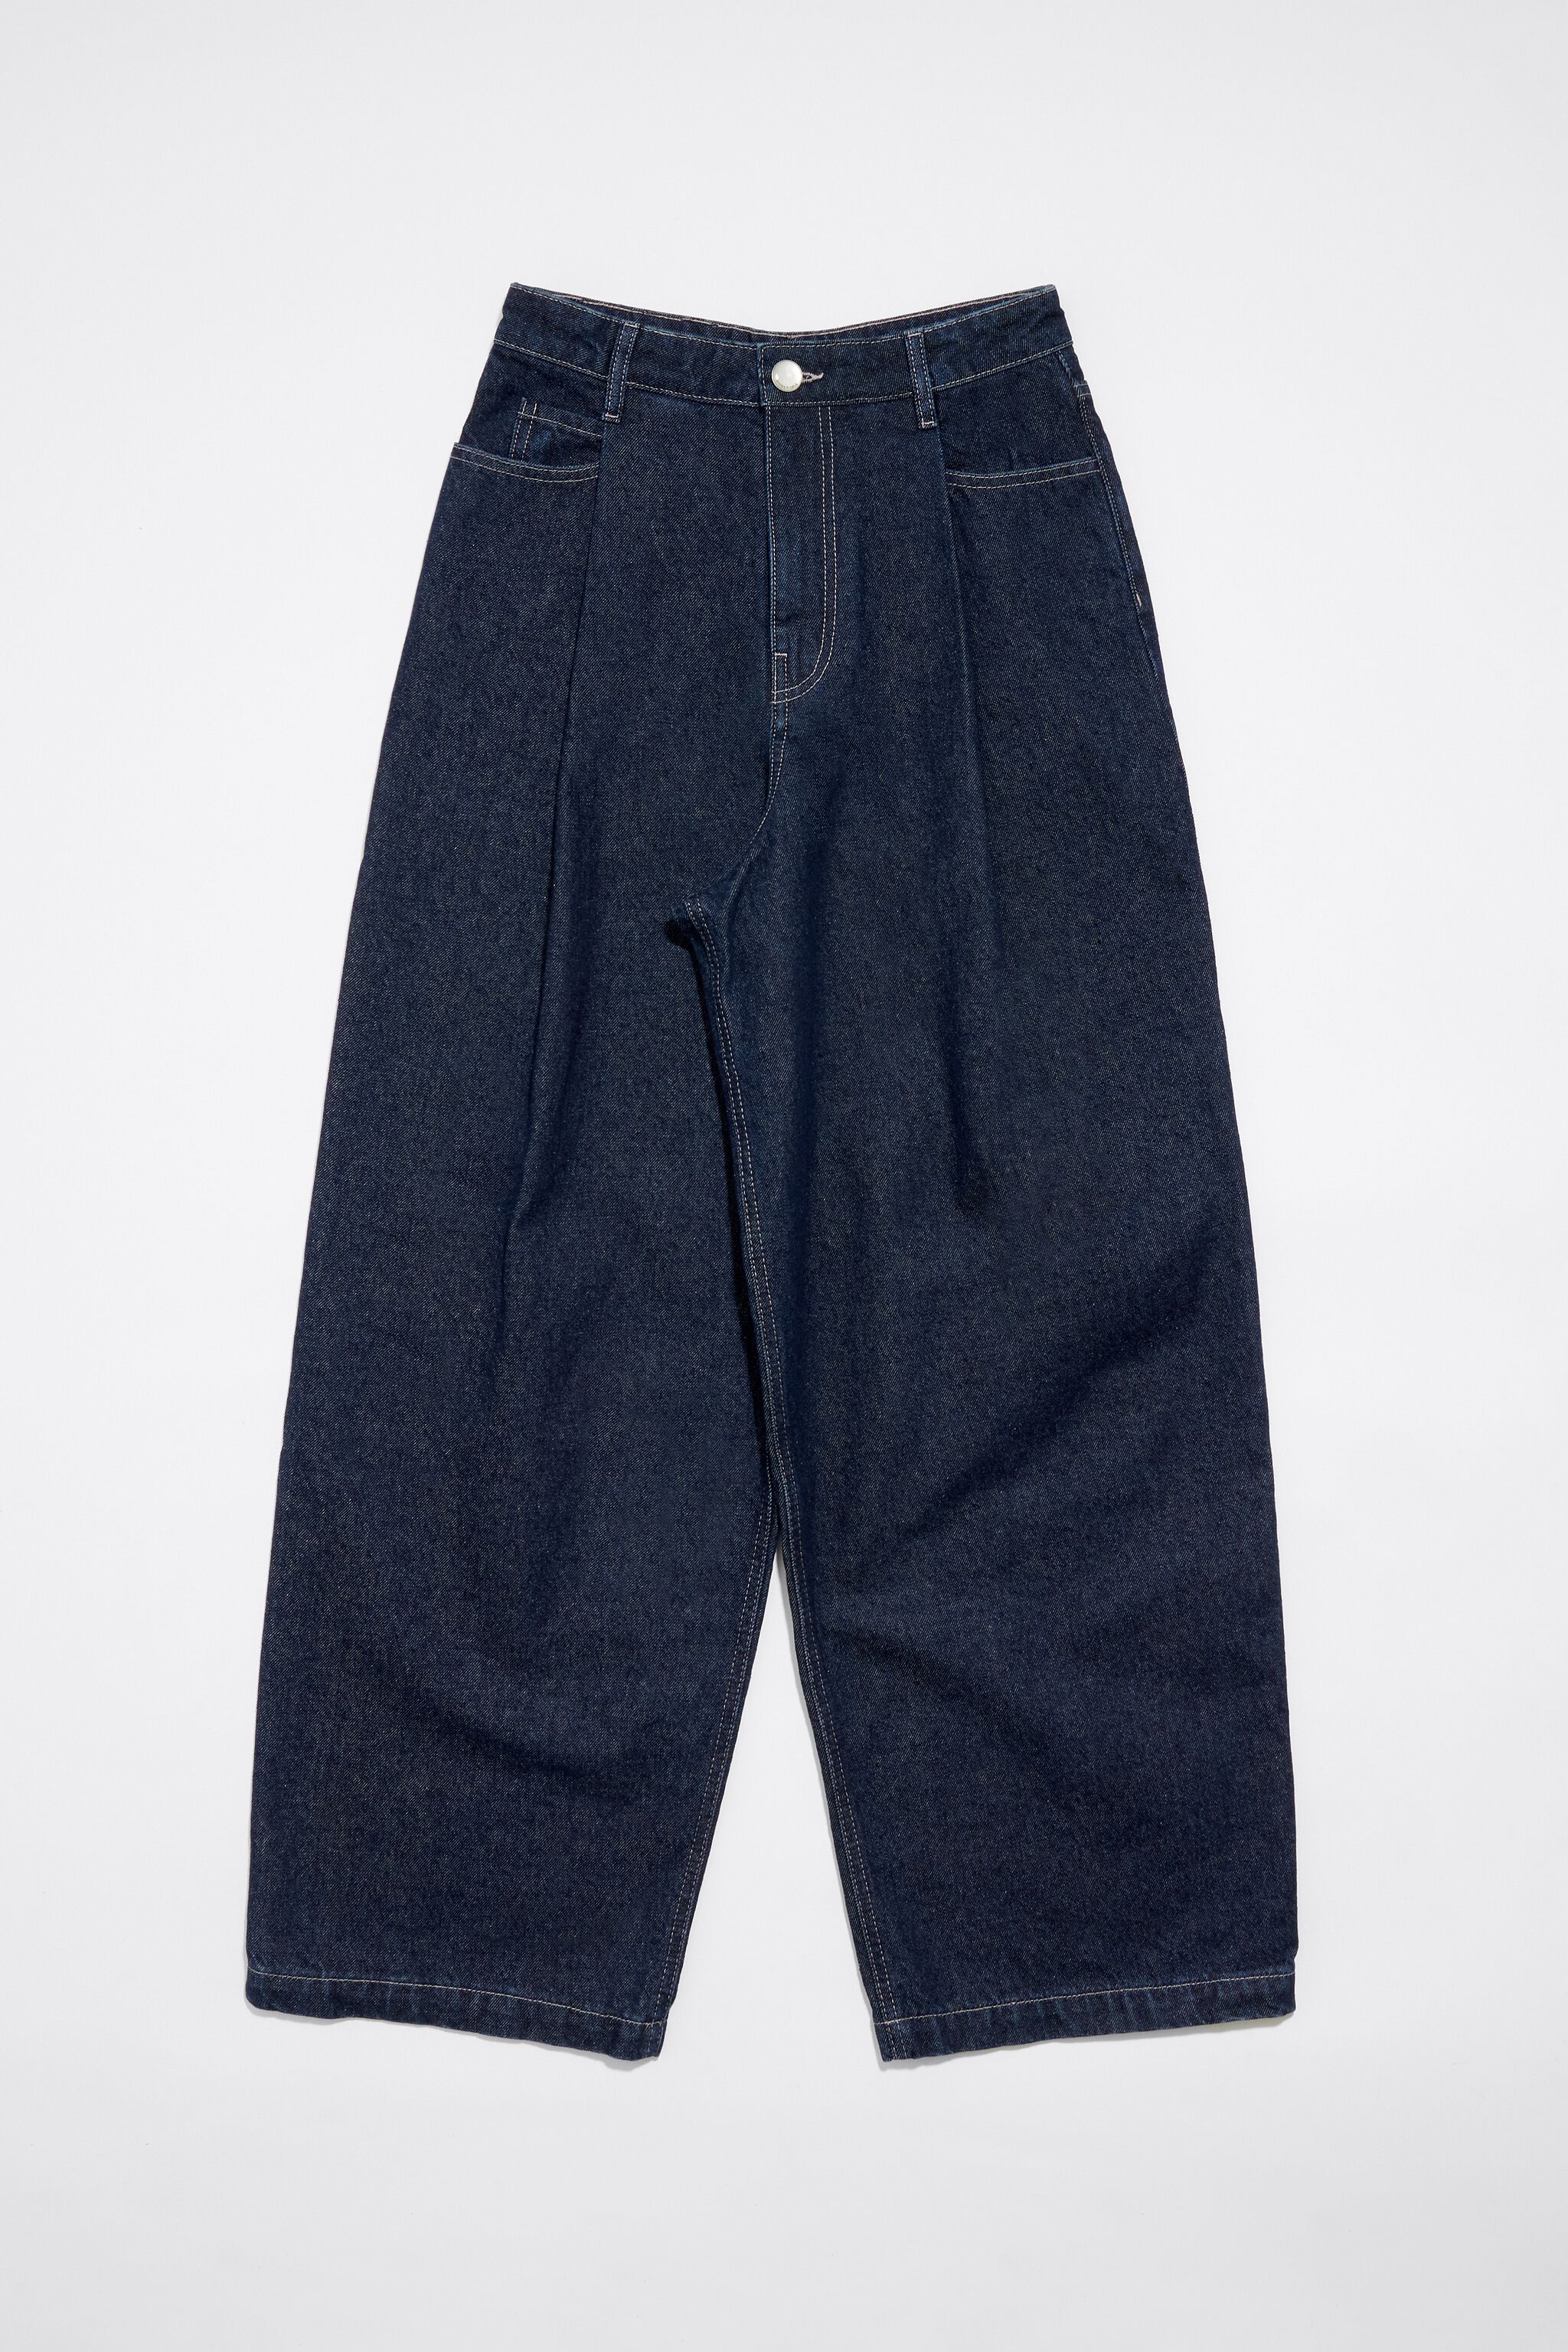 LE CULOTTIER vintage wide leg sailor jeans dungaree deep blue denim